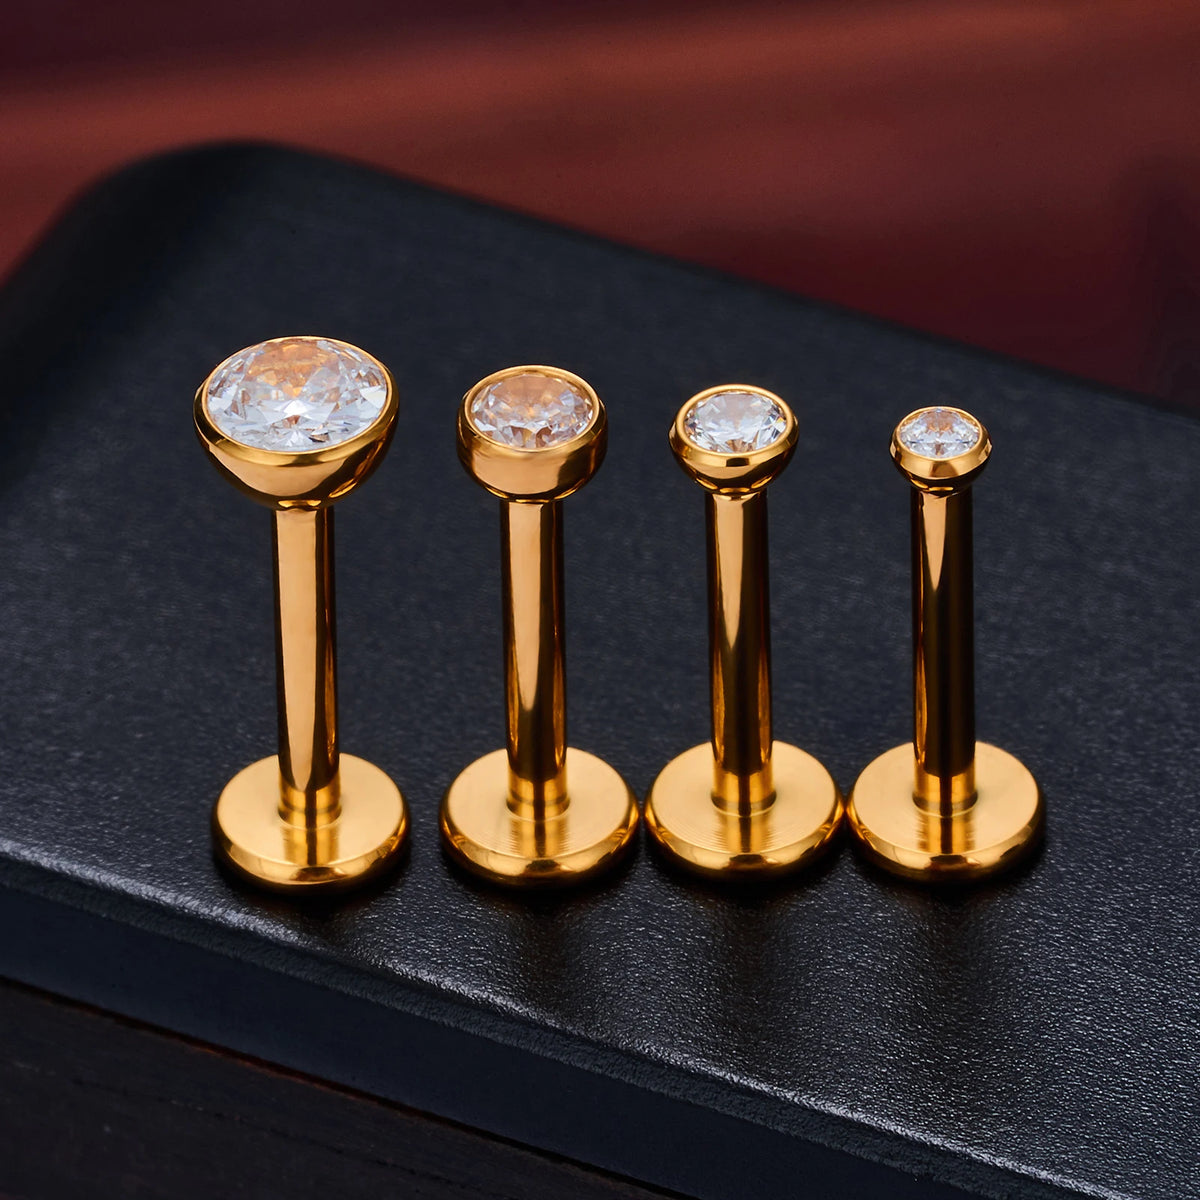 Kleine monroe piercing met een heldere diamanten gouden monroe piercing titanium labret stud met interne schroefdraad